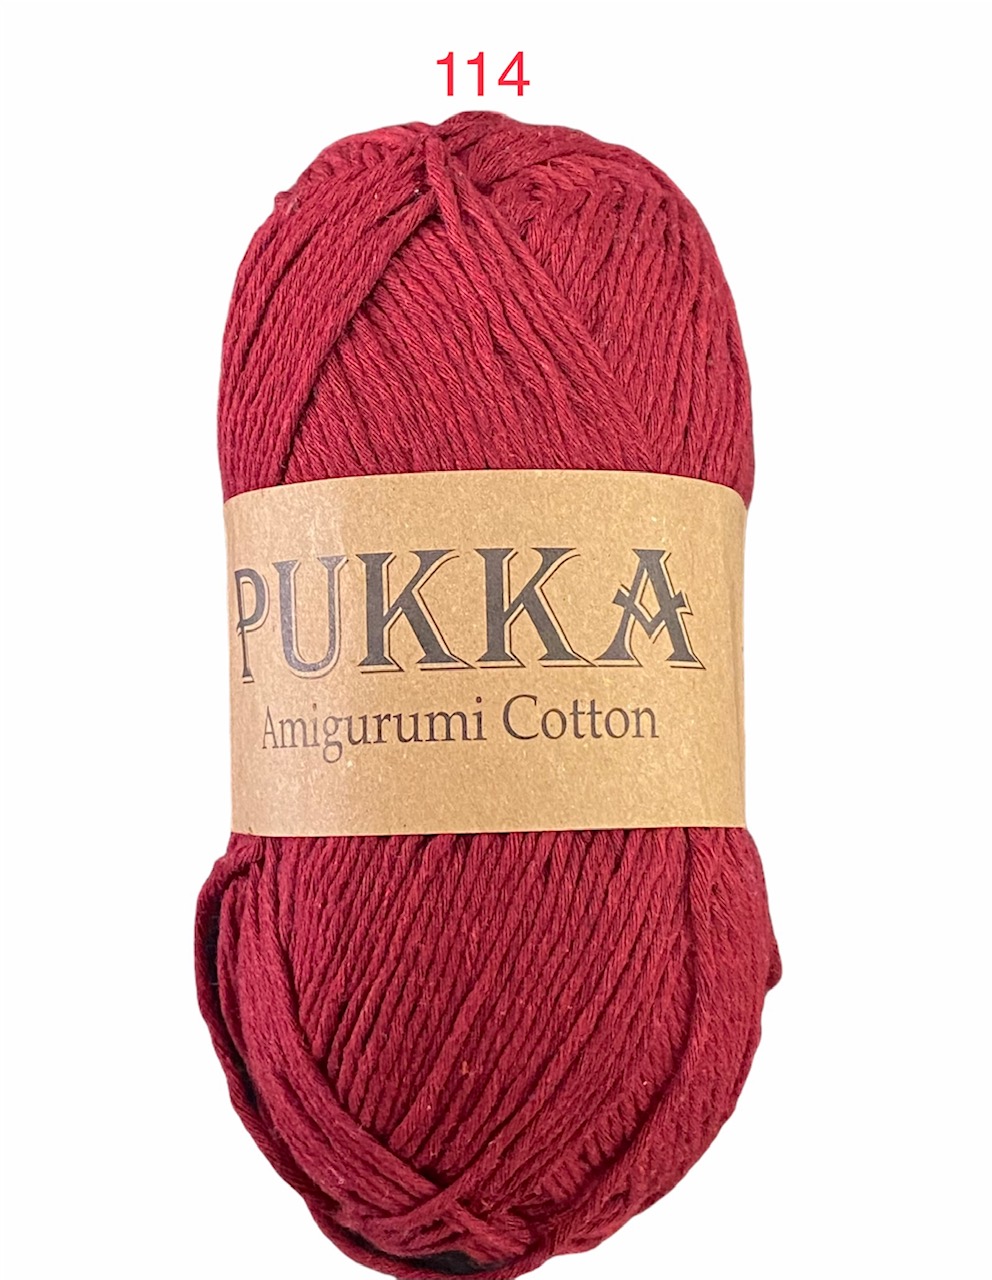 PUKKA Amigurumi Cotton 100g,114